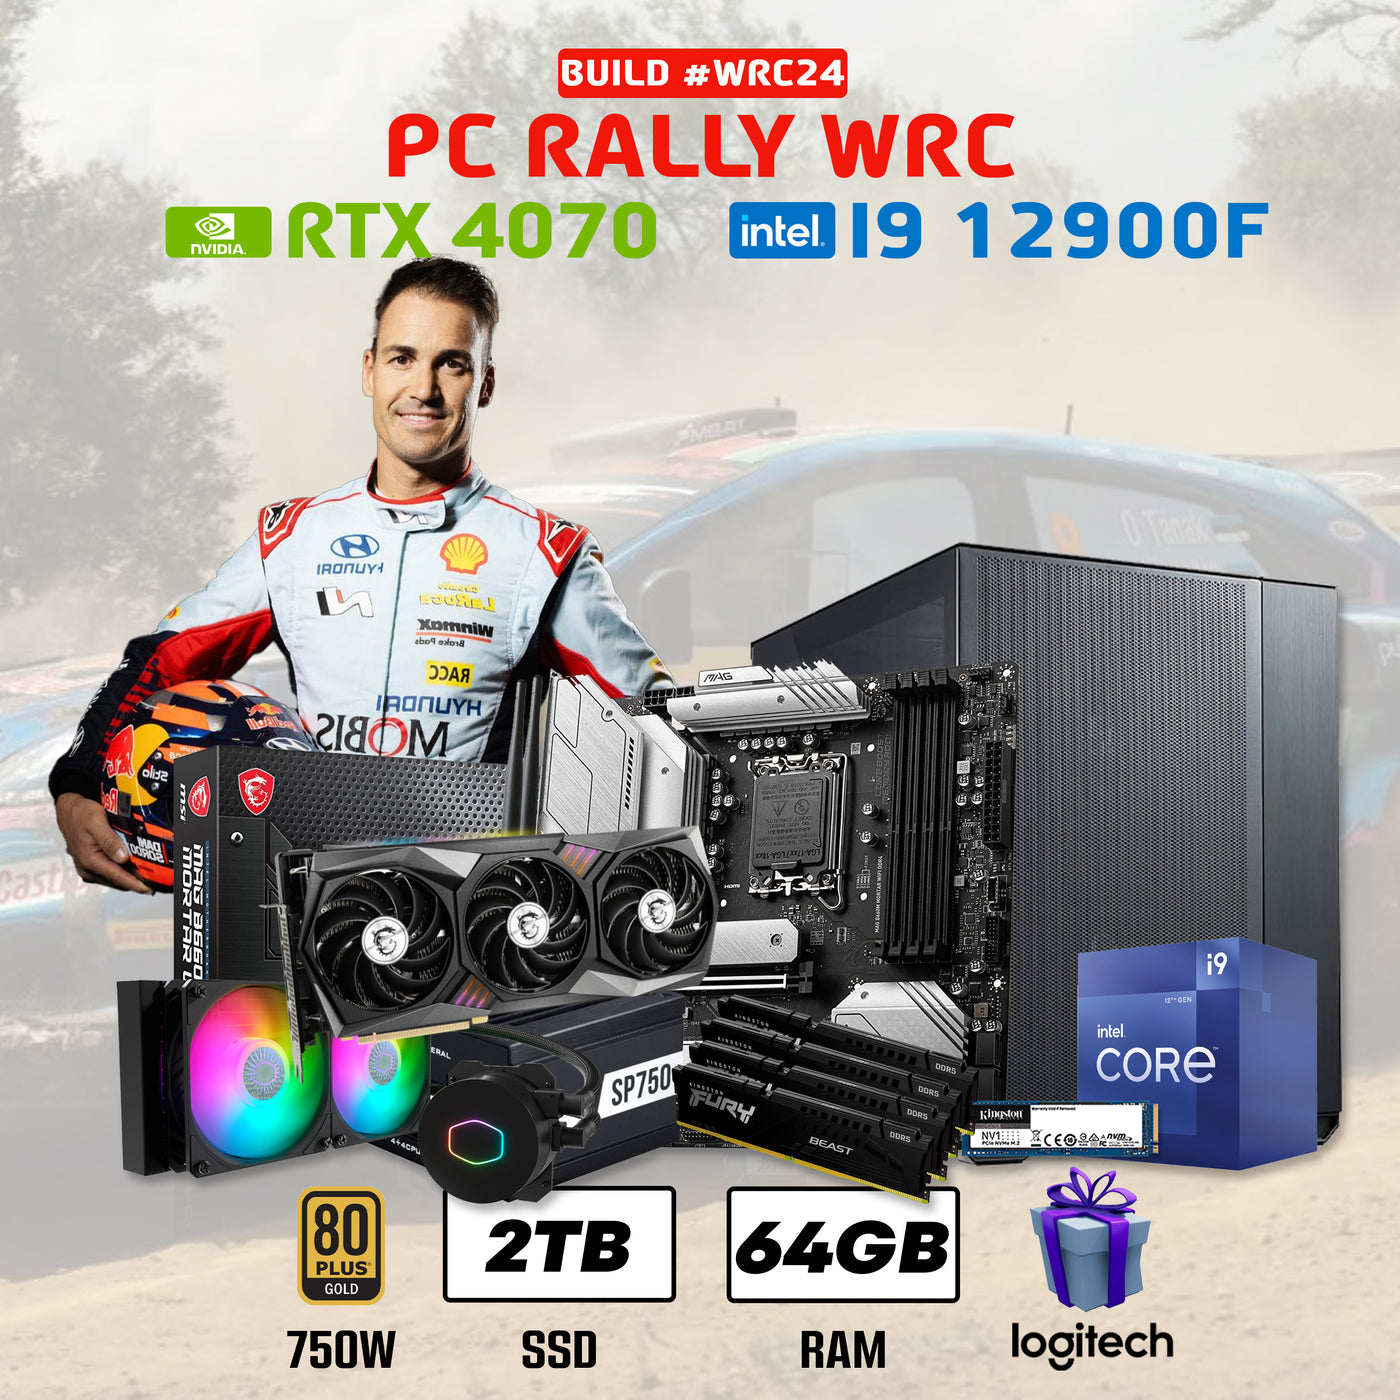 PC RALLY WRC #WRC24 INTEL CORE I9 12900F | RTX 4070 12GB | 2TB SSD | 64GB DDR5 | ENF. LIQ.